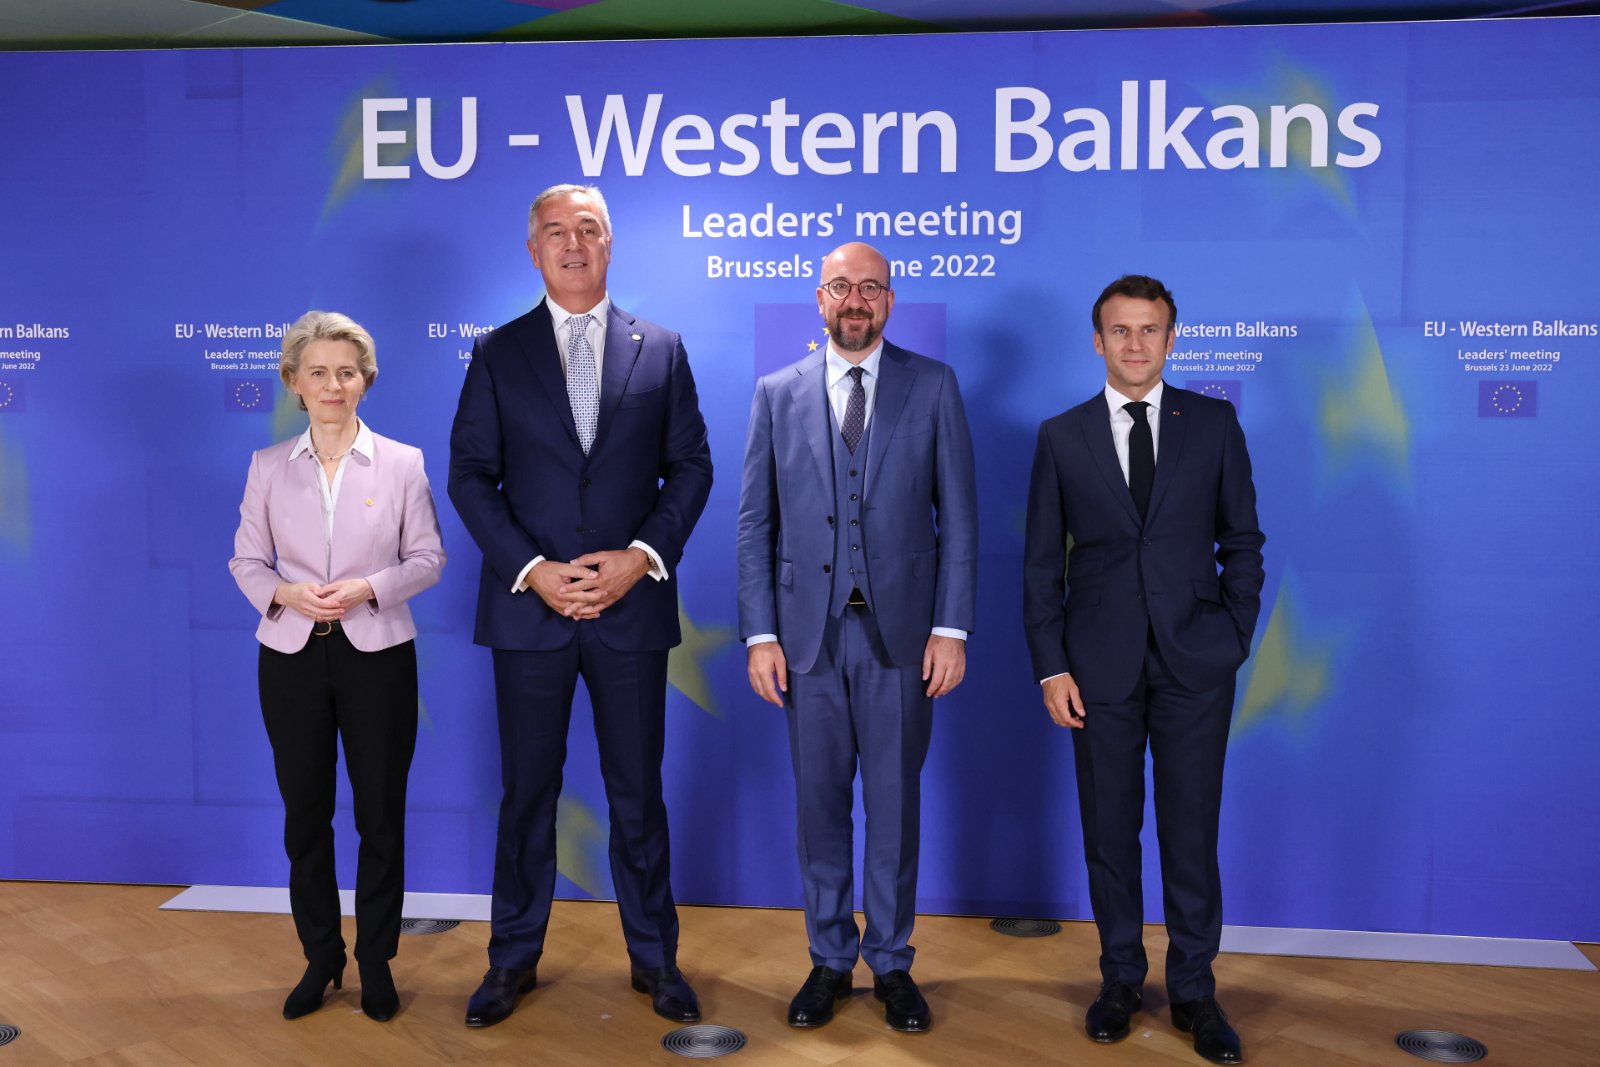 Završen samit EU i Zapadnog Balkana u Briselu